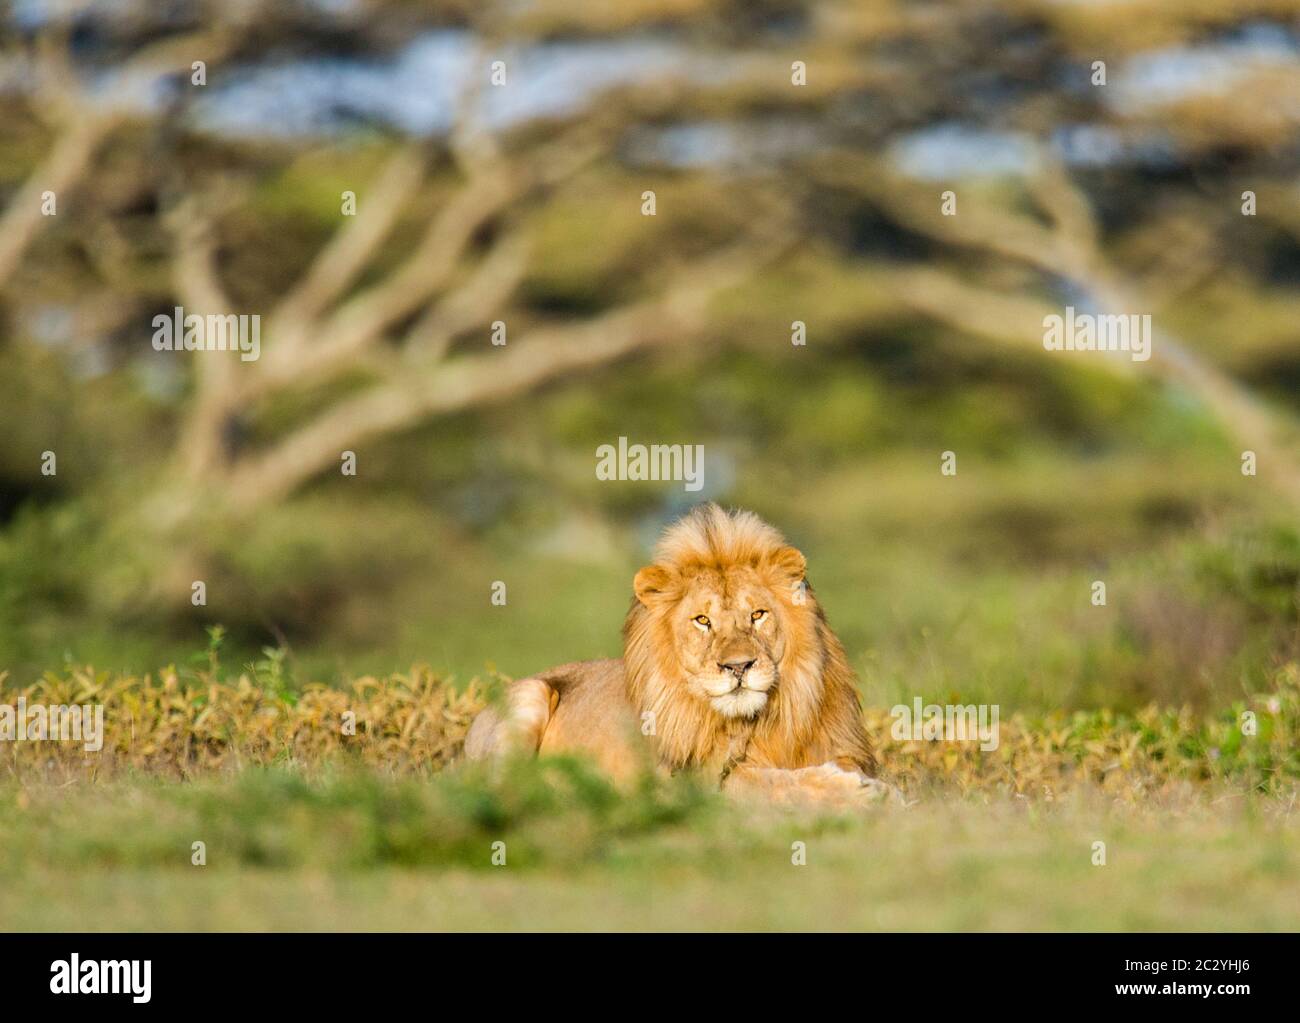 Portrait du lion (Panthera leo) reposant sur l'herbe, zone de conservation de Ngorongoro, Tanzanie, Afrique Banque D'Images